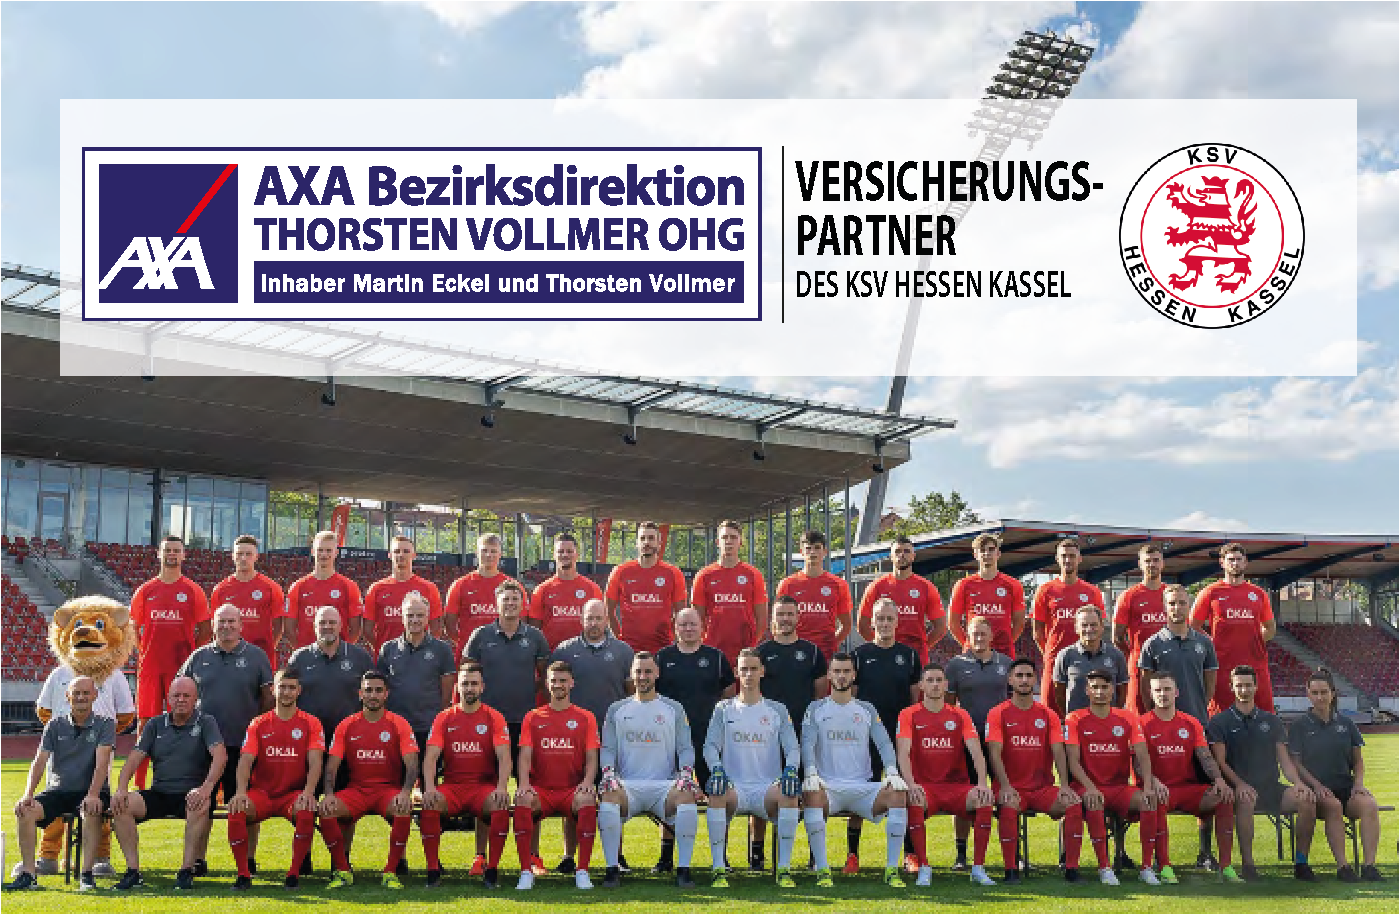 AXA Schwalmtal Thorsten Vollmer OHG | Sponsoring KSV Hessen Kassel e.V.